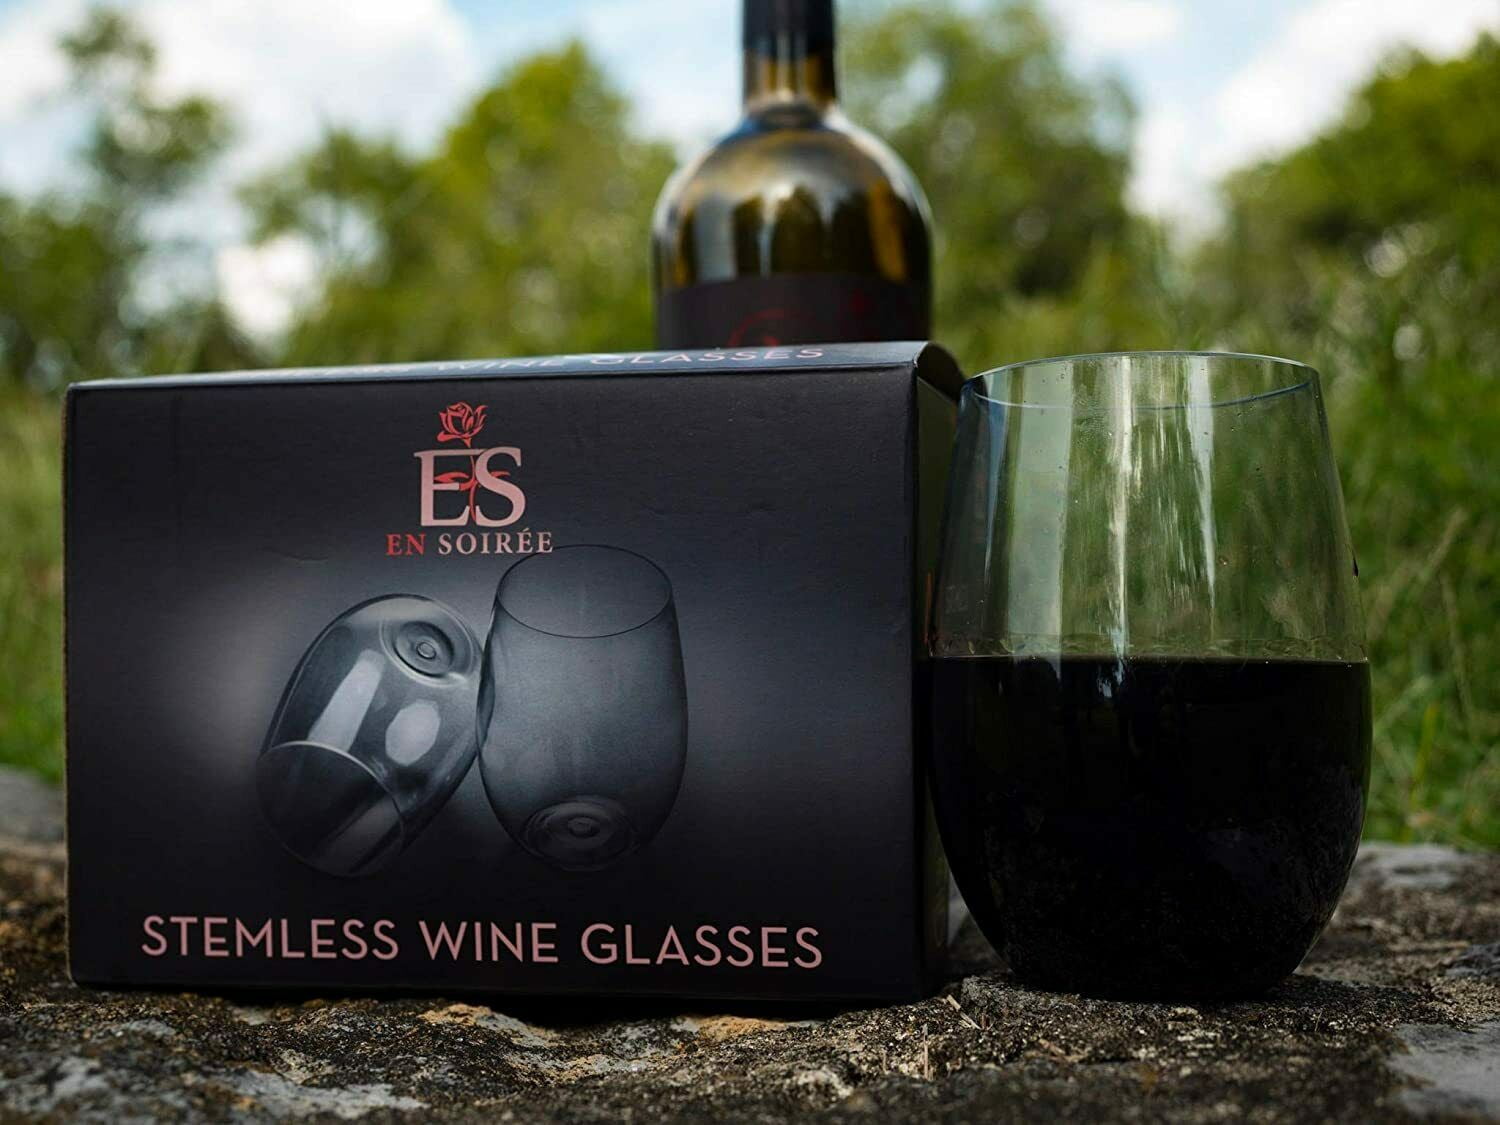 SET SAIL – 4 pack Shatterproof Designer Wine Glasses